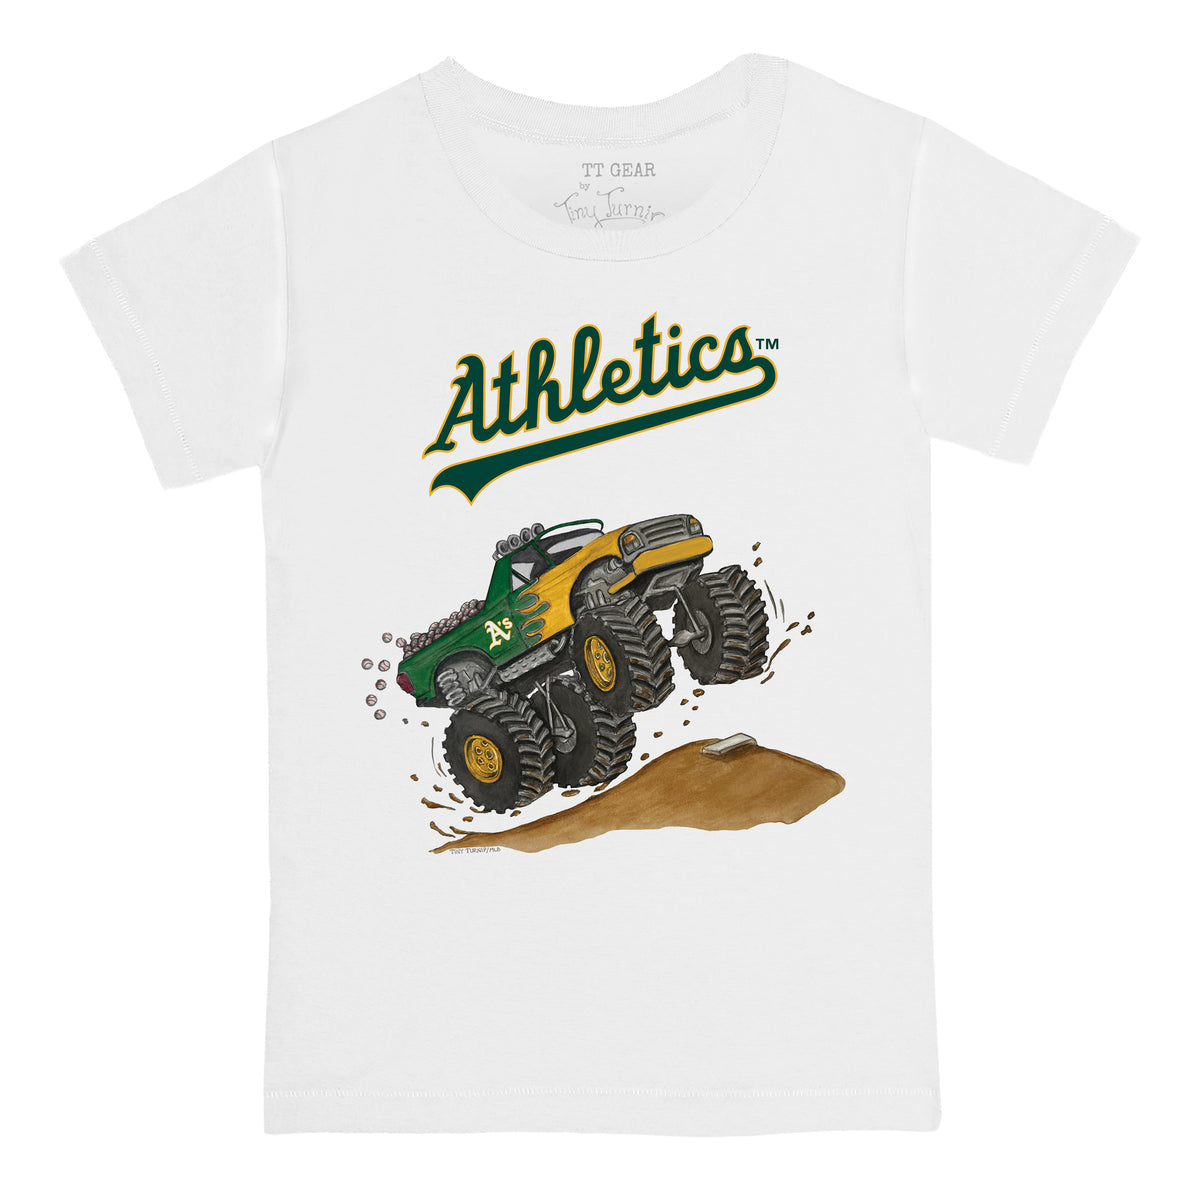 Oakland Athletics Monster Truck Tee Shirt